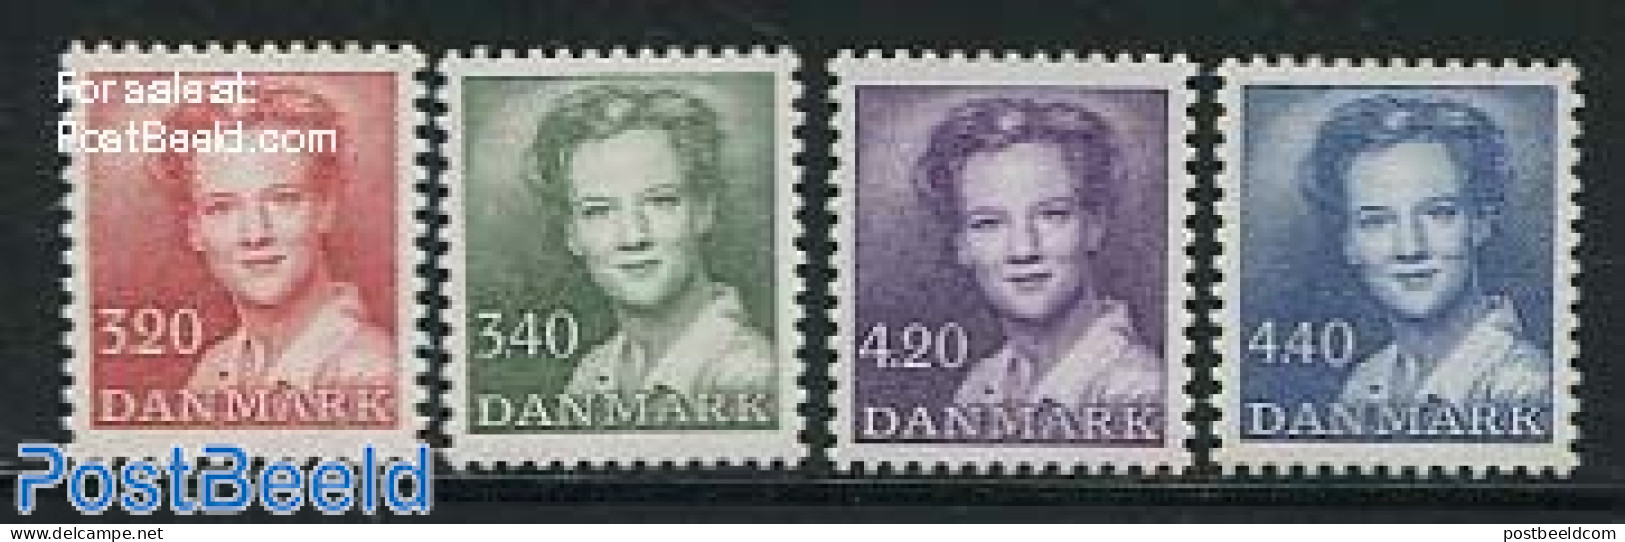 Denmark 1989 Definitives 4v, Mint NH - Ongebruikt